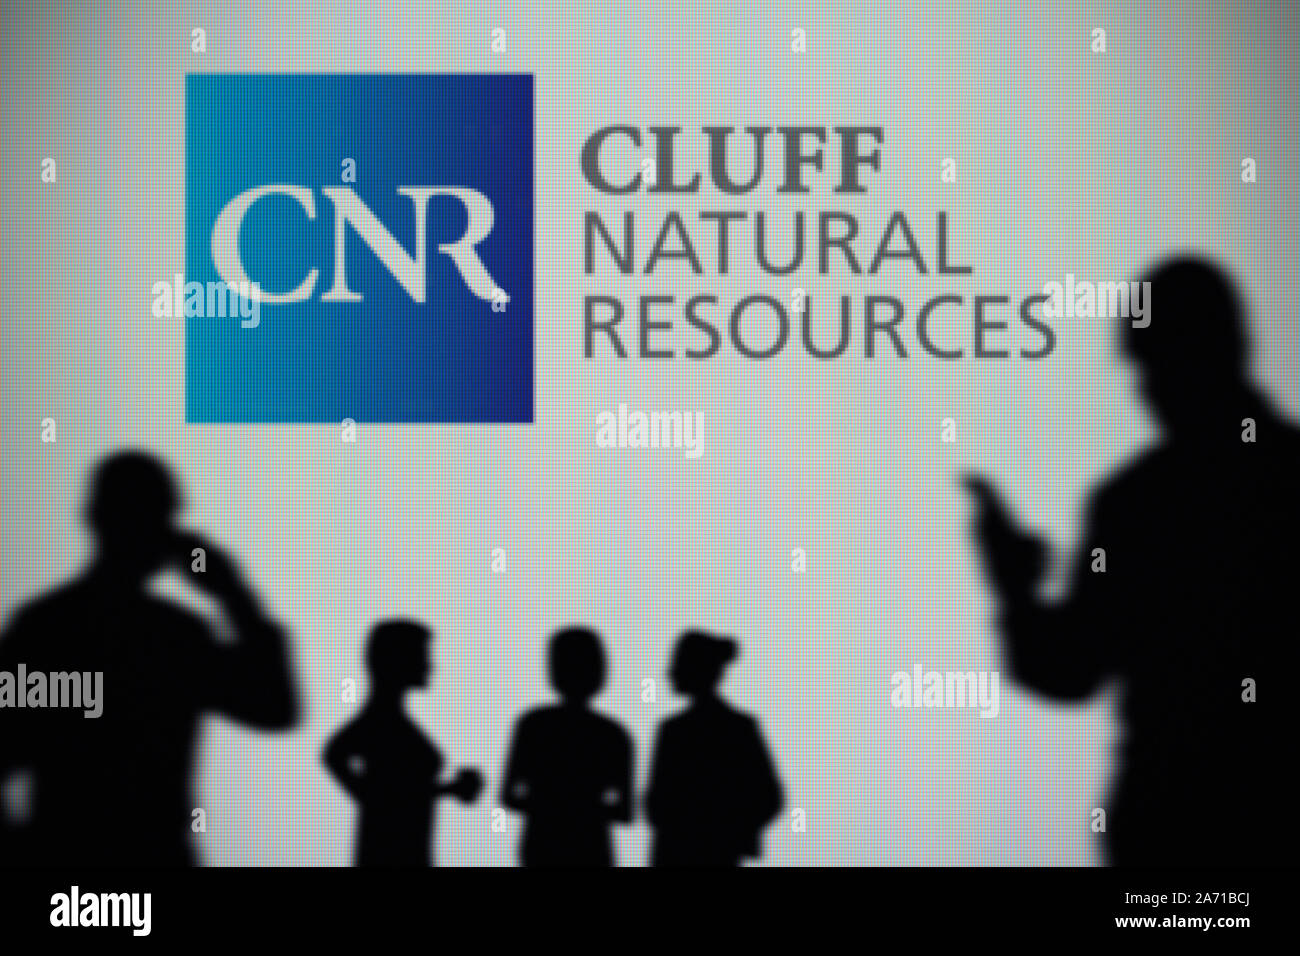 Die cluff natürlichen Ressourcen Logo ist auf einen LED-Bildschirm im Hintergrund, während eine Silhouette Person ein Smartphone verwendet (nur redaktionelle Nutzung) Stockfoto